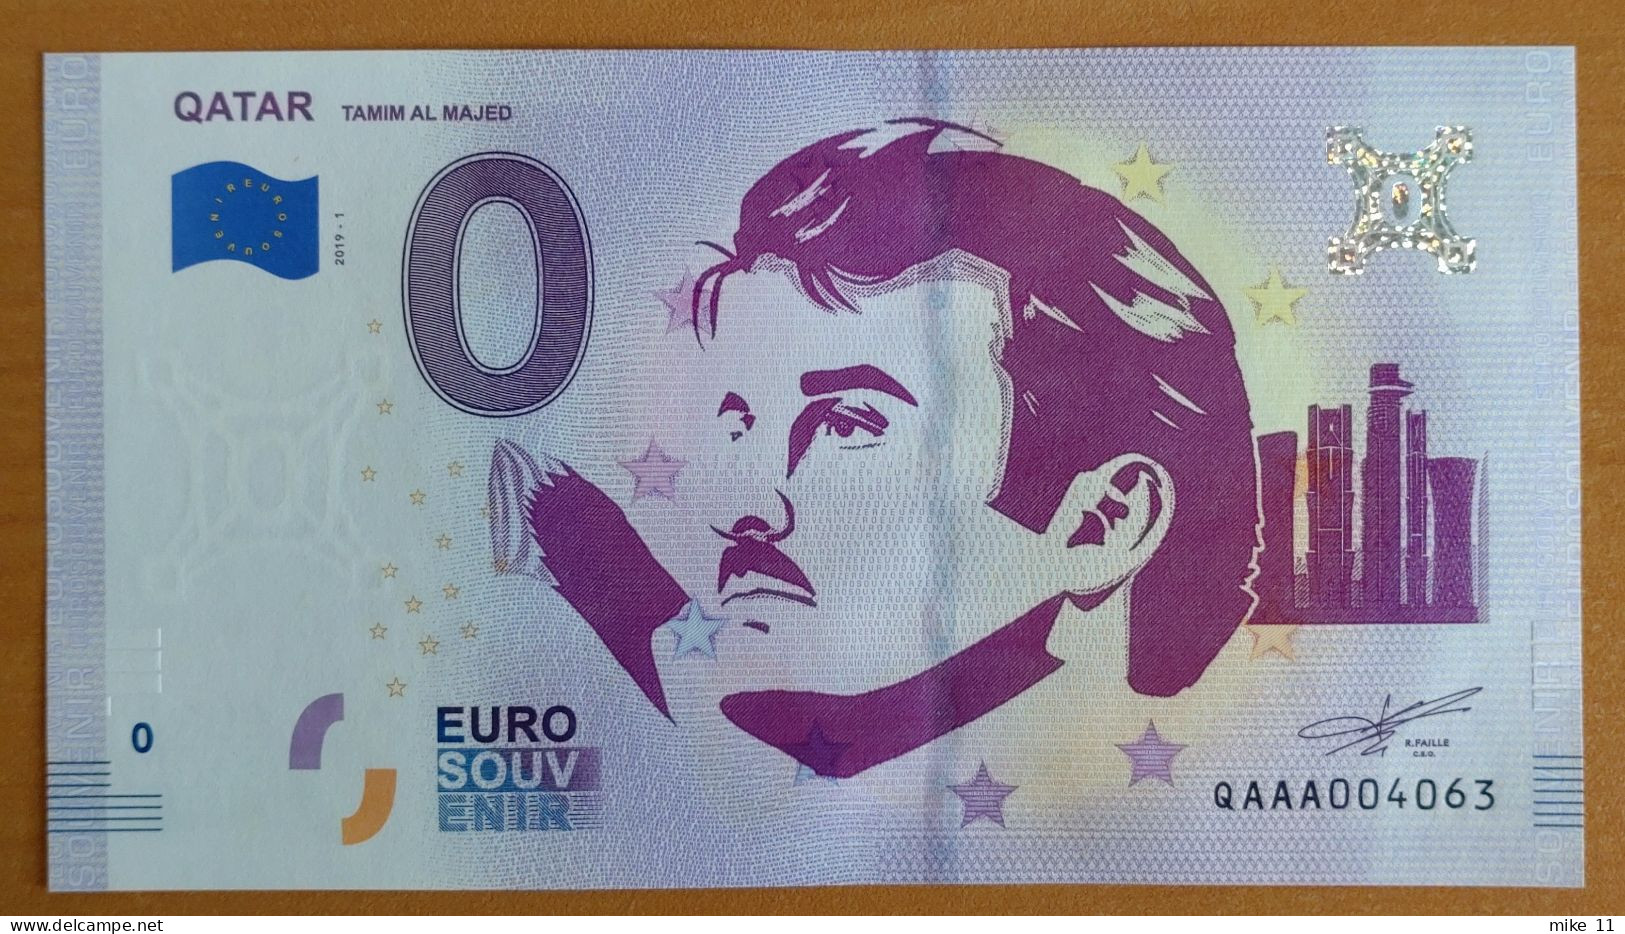 0 Euro Souvenir QATAR - TAMIM AL MAJED QAAA 2019-1 Nr. 4063 - Autres - Europe